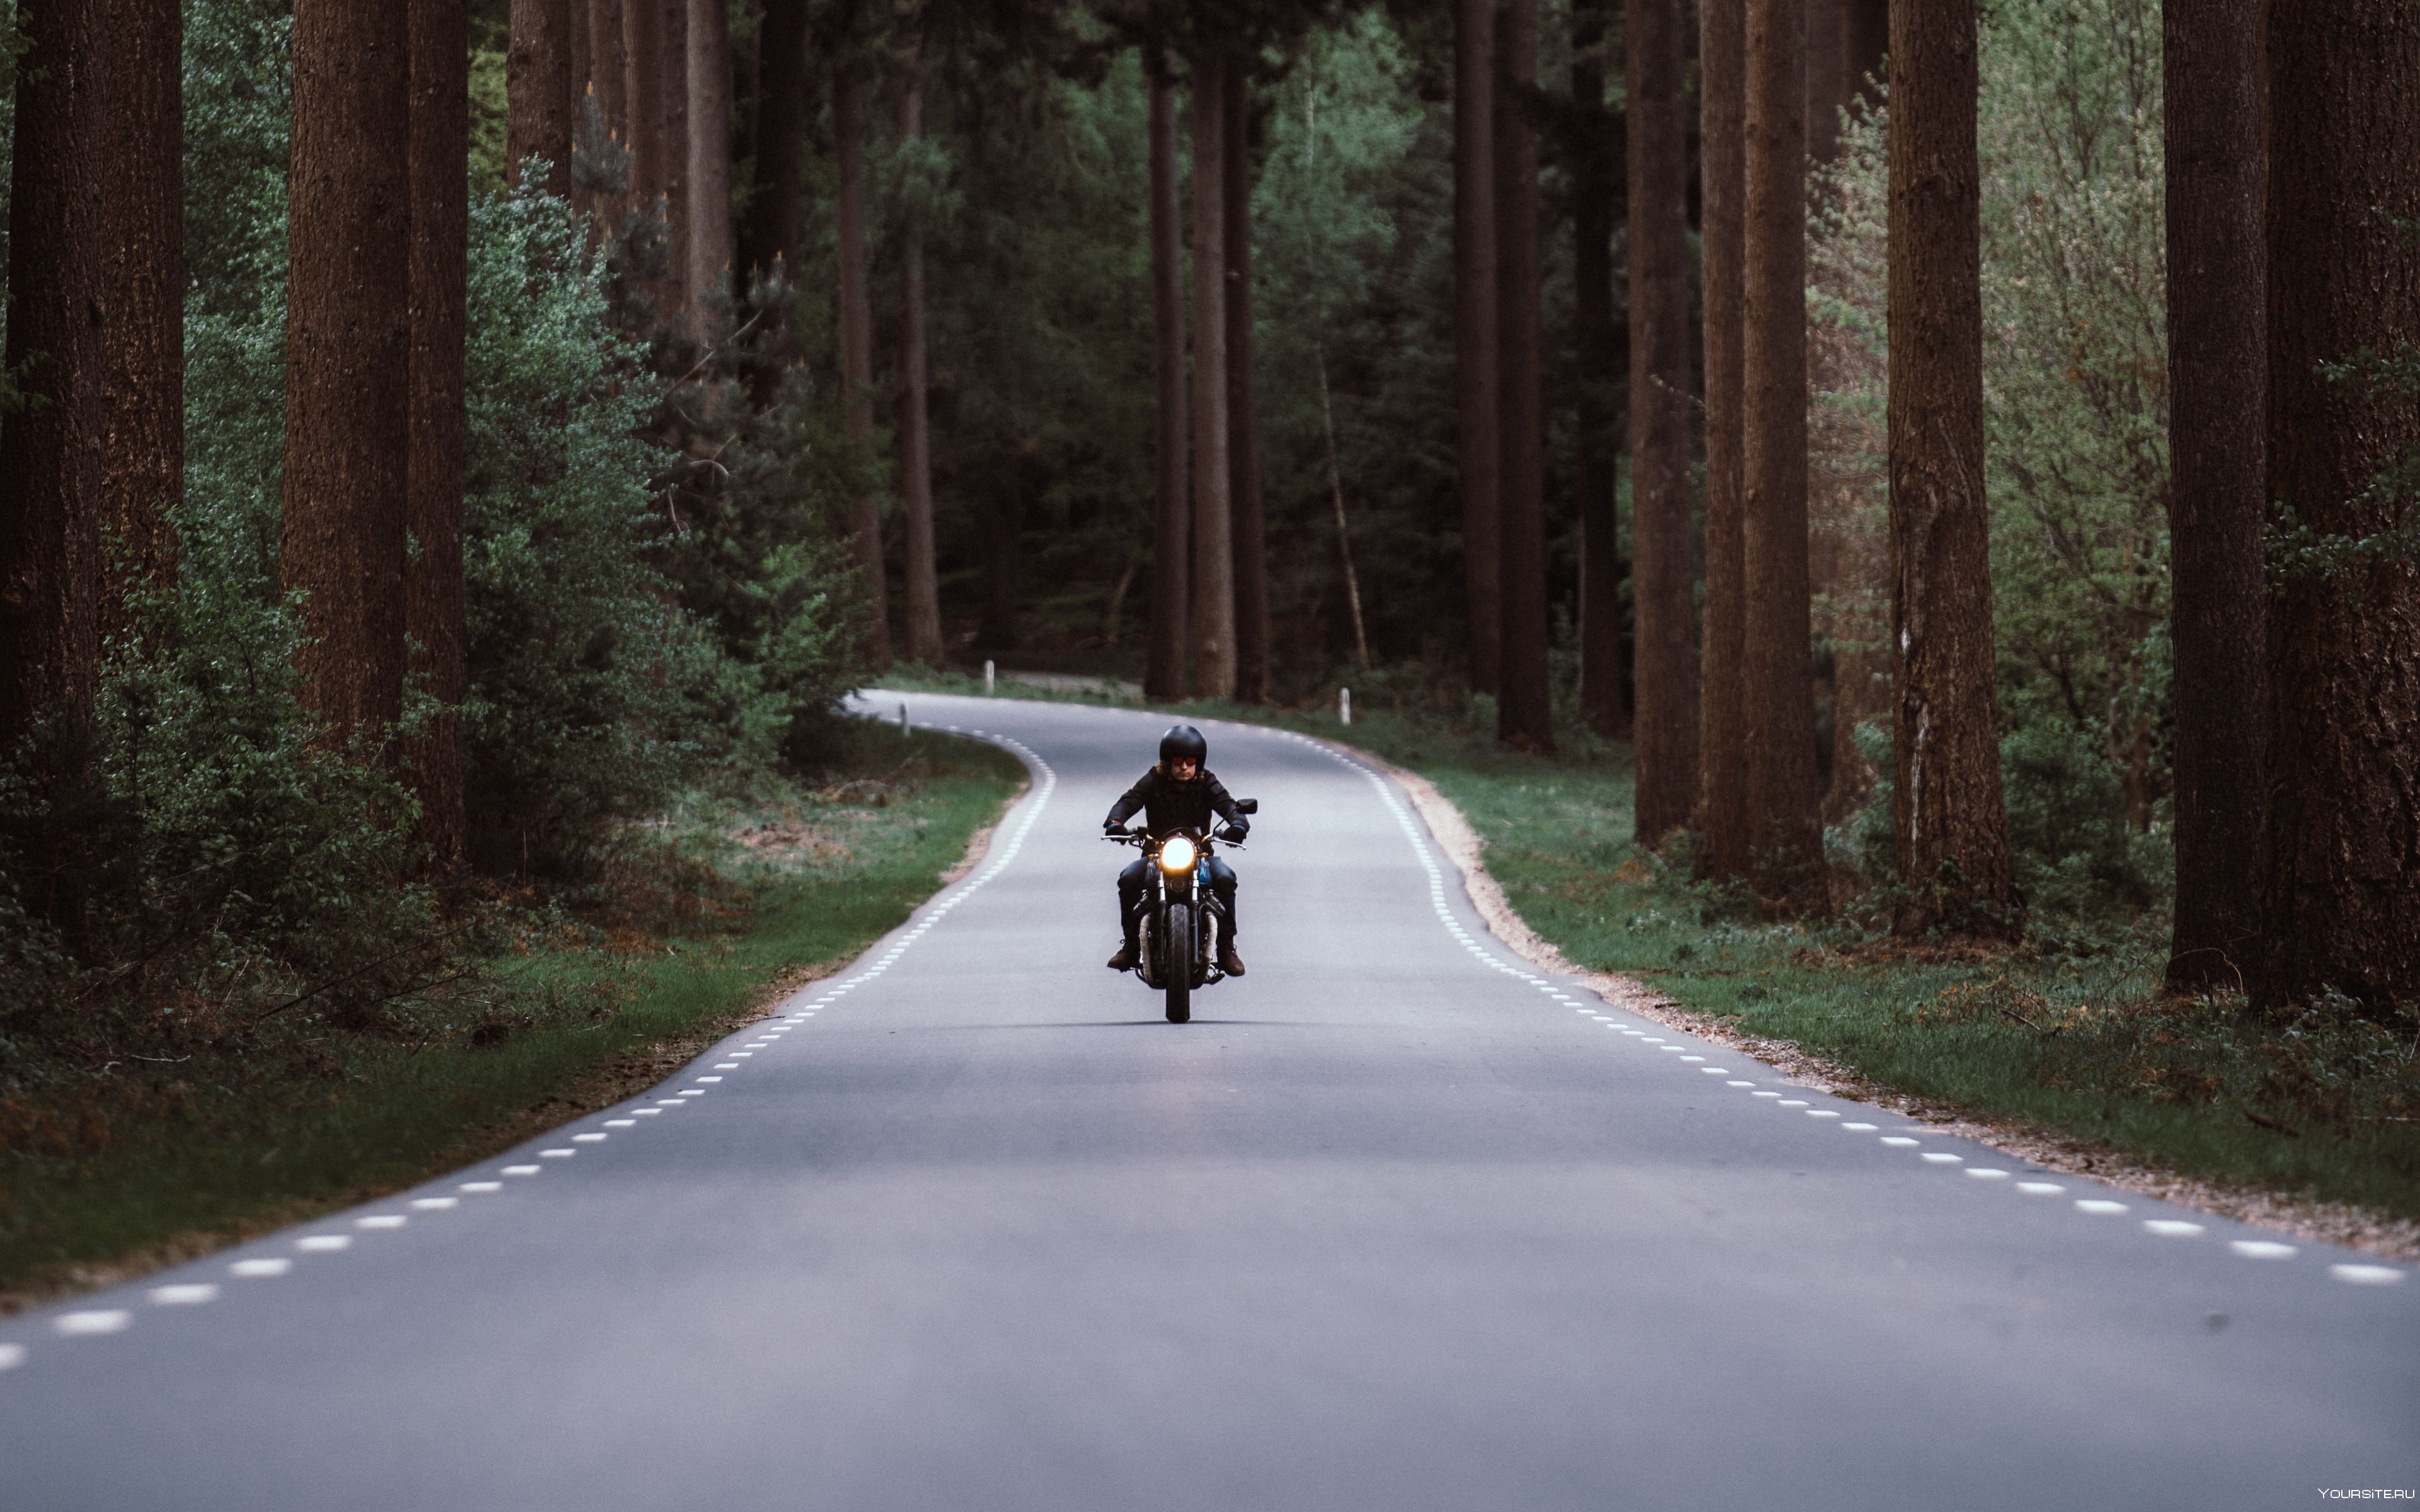 Мотоцикл едет по дороге. Мотоцикл на дороге. Байкер на дороге. Дорога. Мотоцикл в лесу.